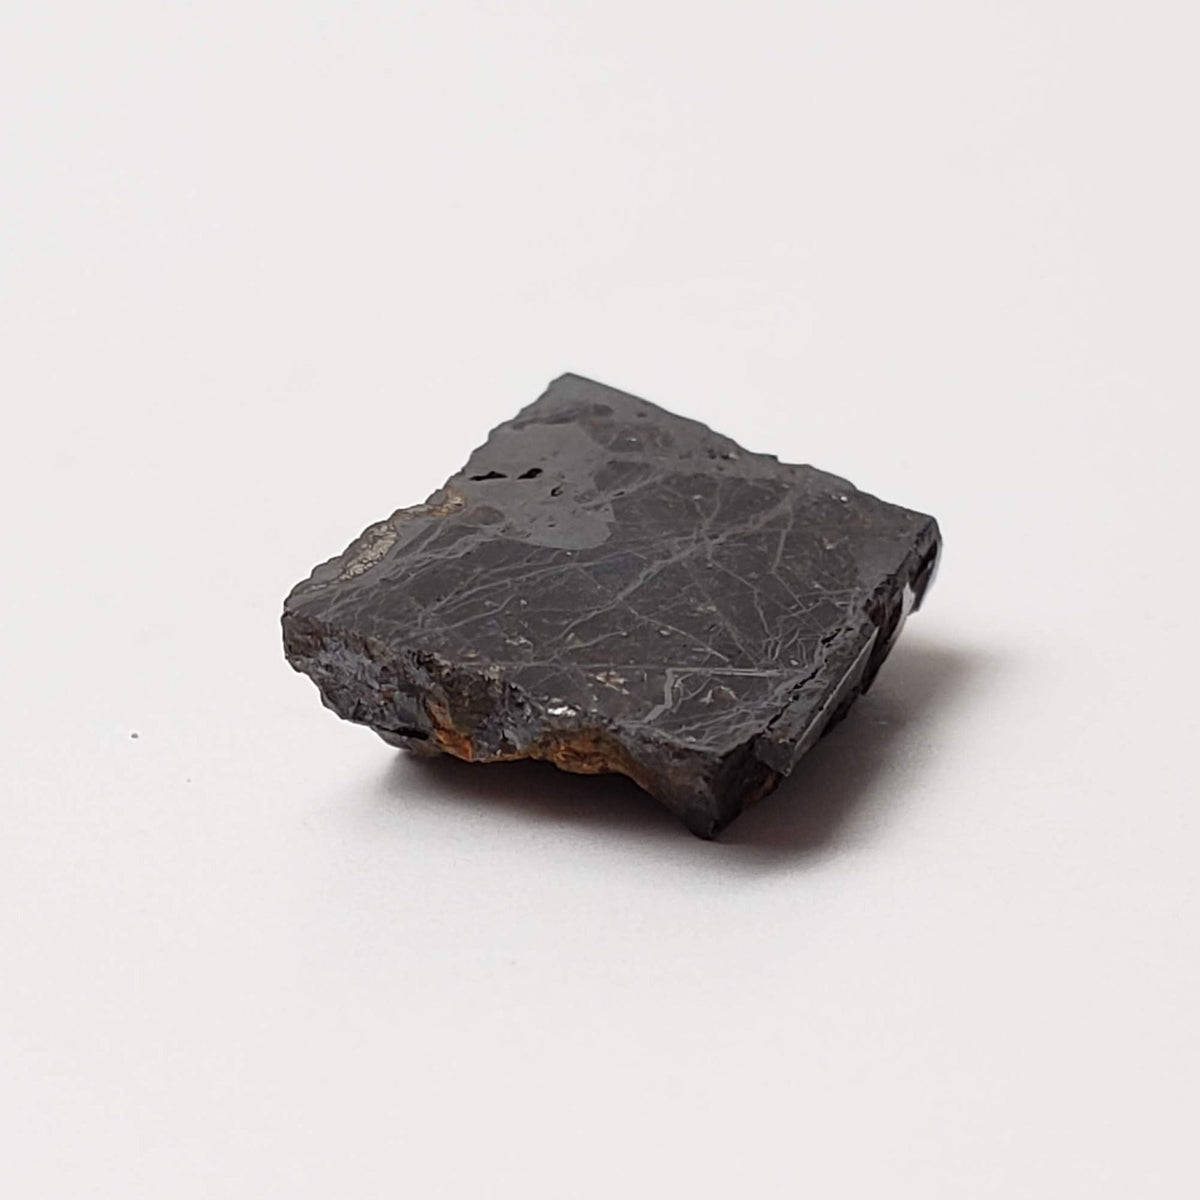 Huckitta Meteorite | 1.43 Grams | Part End Cut | Pallasite Stony Iron | Rare | Australia